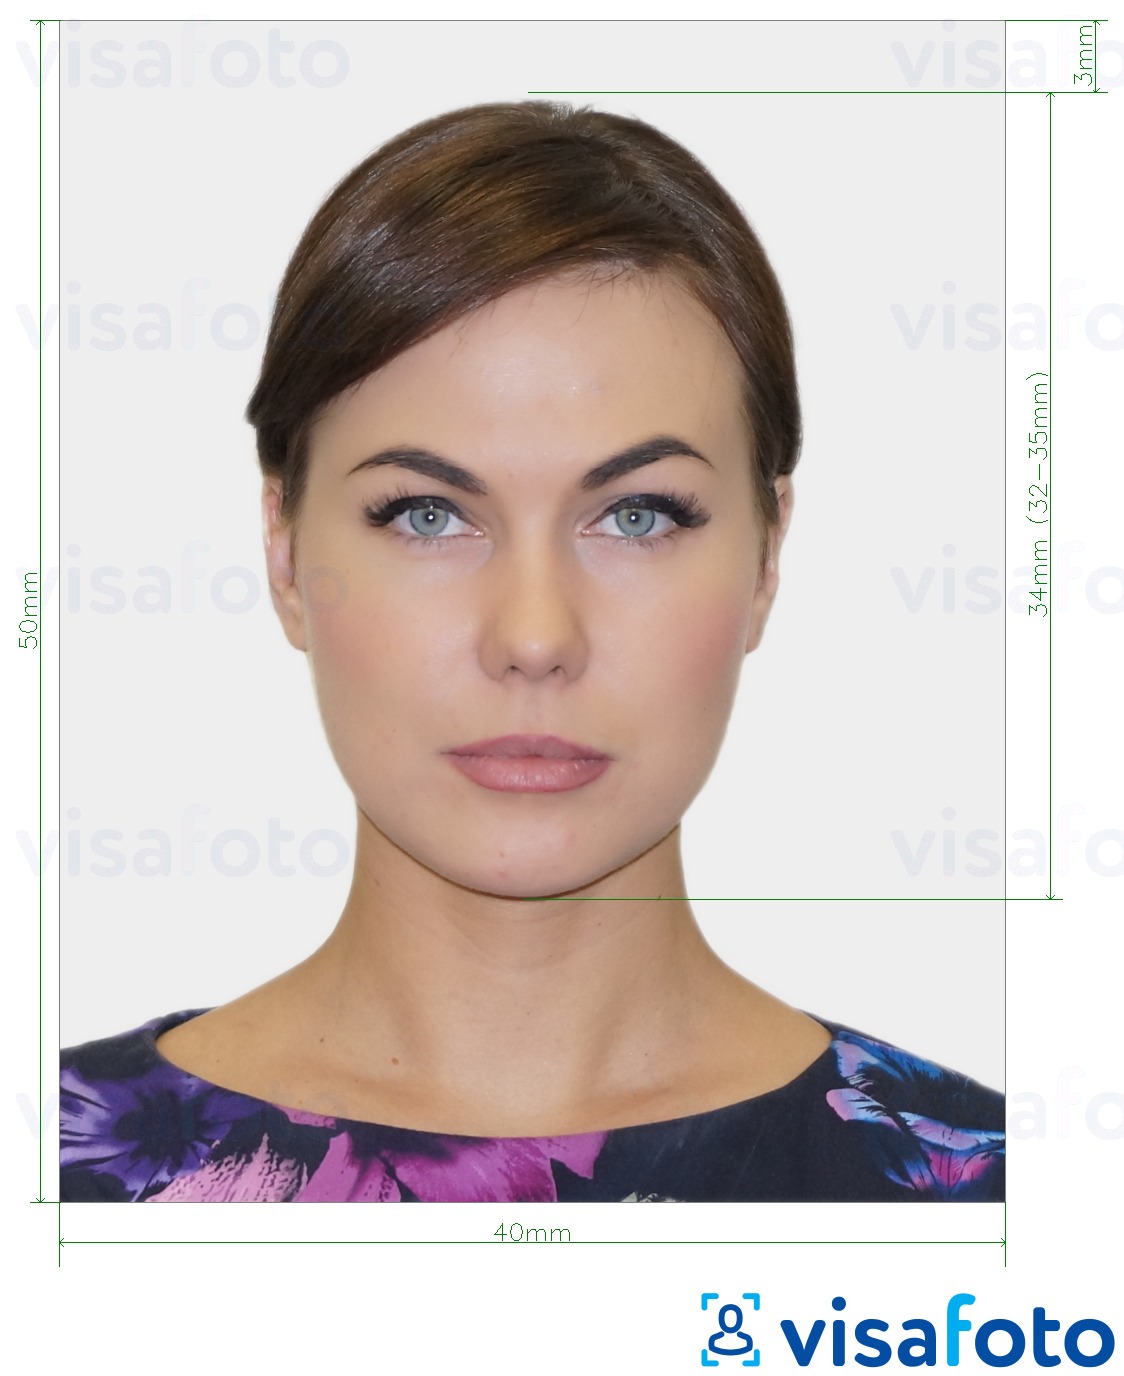 Contoh dari foto untuk Paspor Belarus 40x50 mm (4x5 cm) dengan ukuran spesifikasi yang tepat